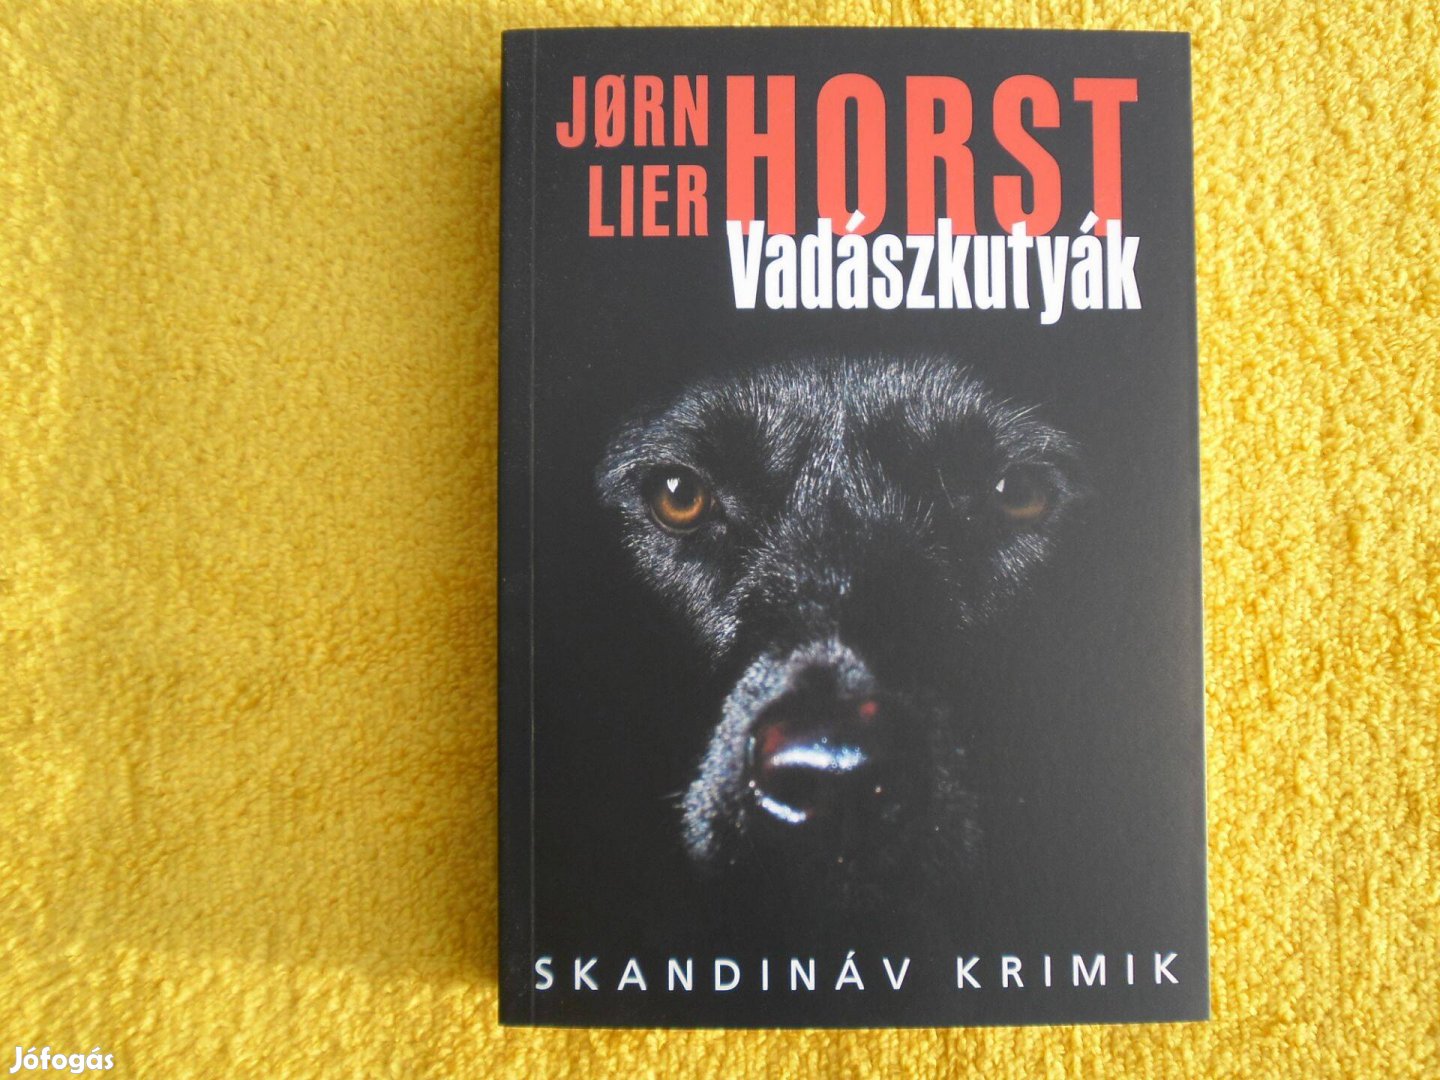 Jorn Lier Horst: Vadászkutyák /Wisting 8. - Üvegkulcs-Díj 2013/